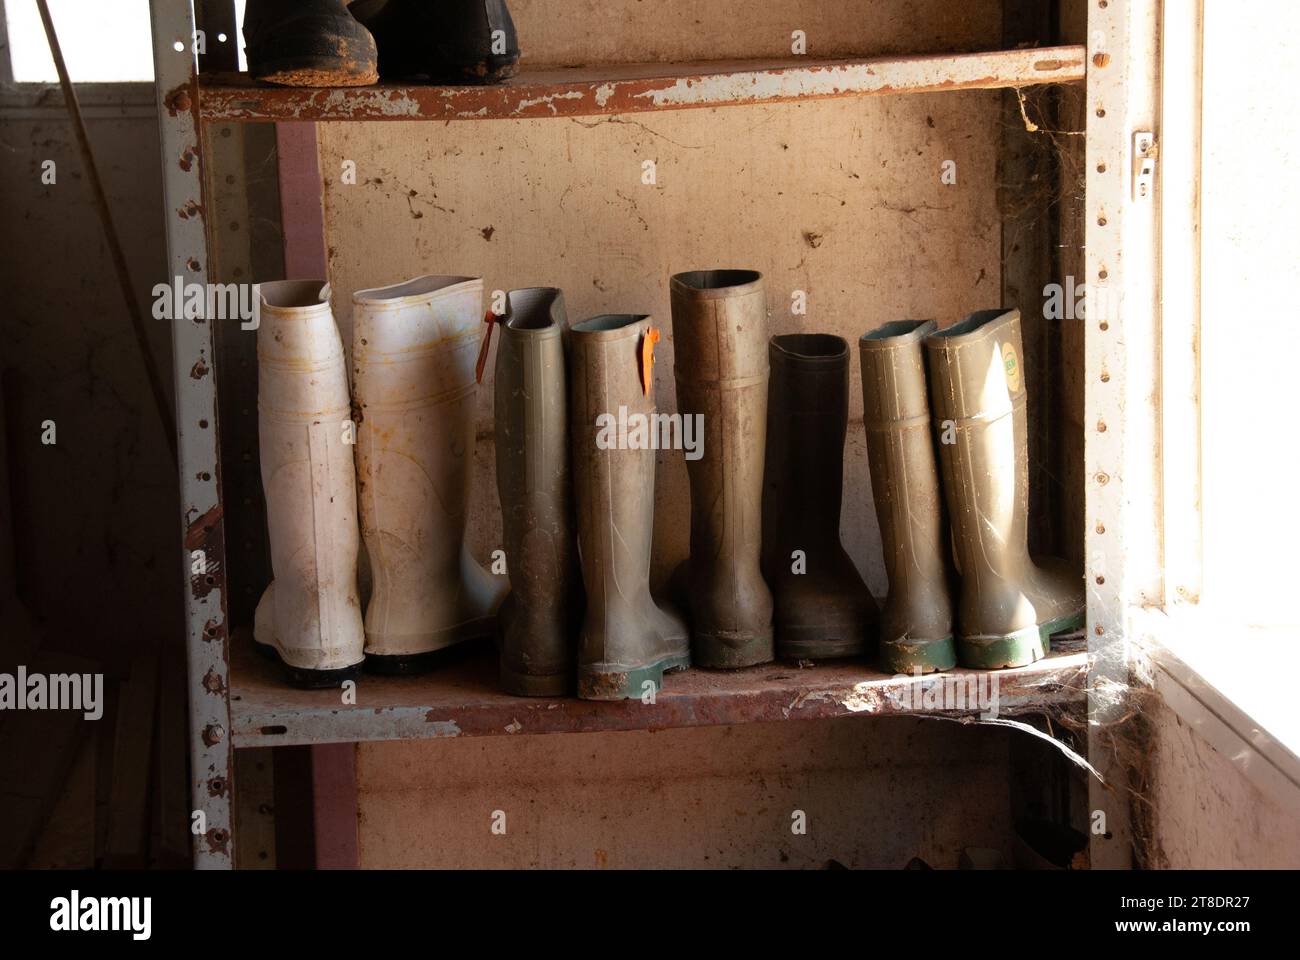 Hochbeinige Gummistiefel, die von Milchbauern in einer Melkscheune getragen werden, werden auf einem Metallregal in der Creamerie gelagert. Stockfoto